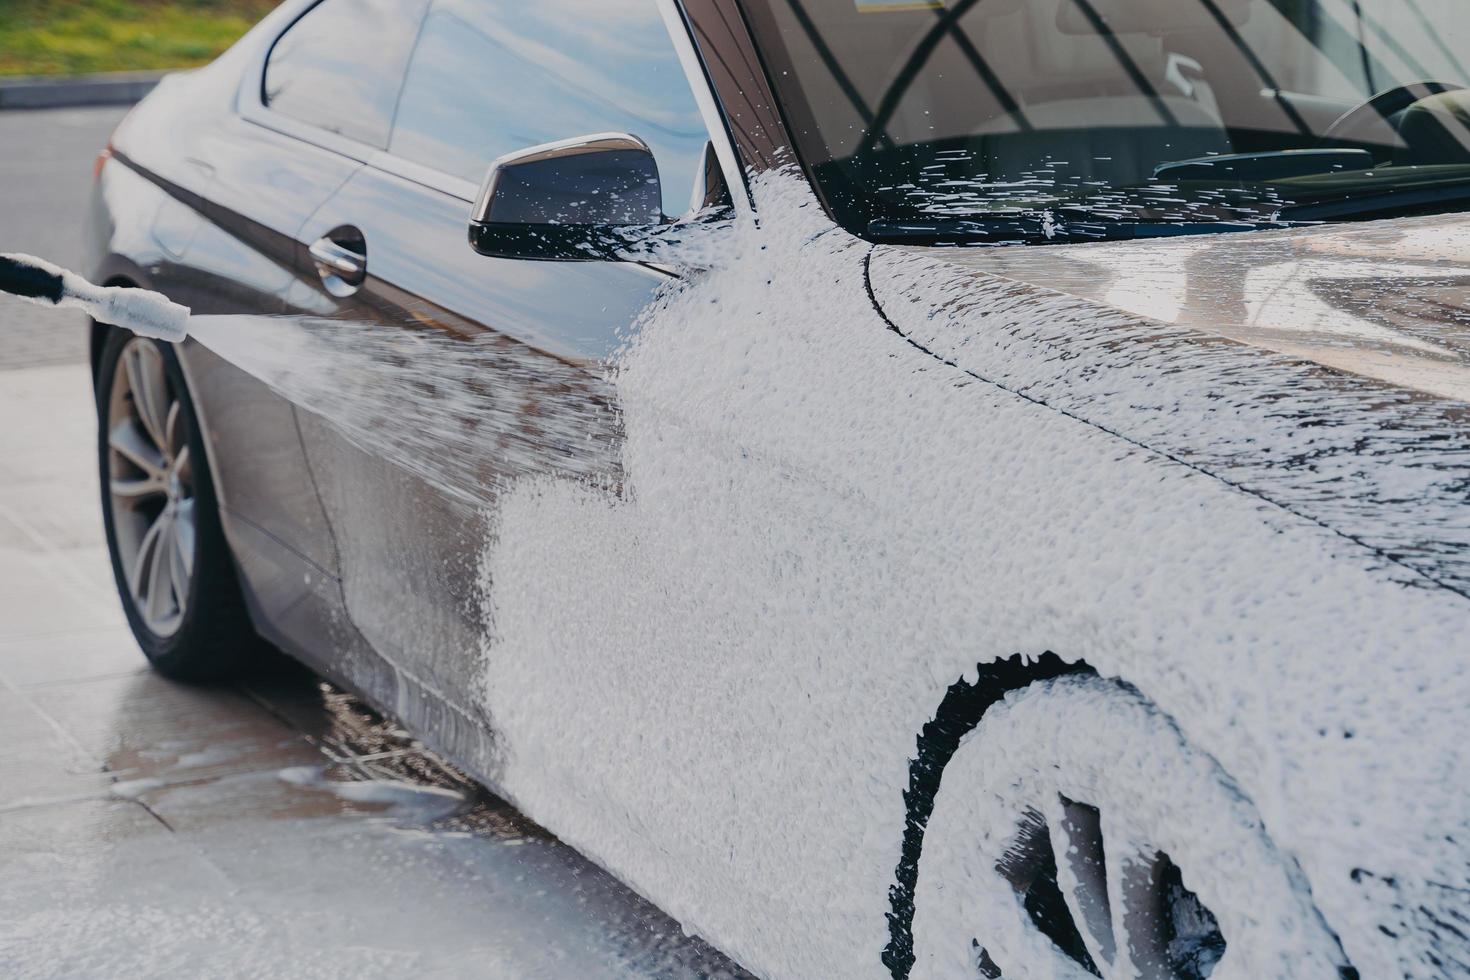 limpieza de automóviles a alta presión, rociado de jabón de lavado especial en vehículos con lavadora a presión al aire libre foto